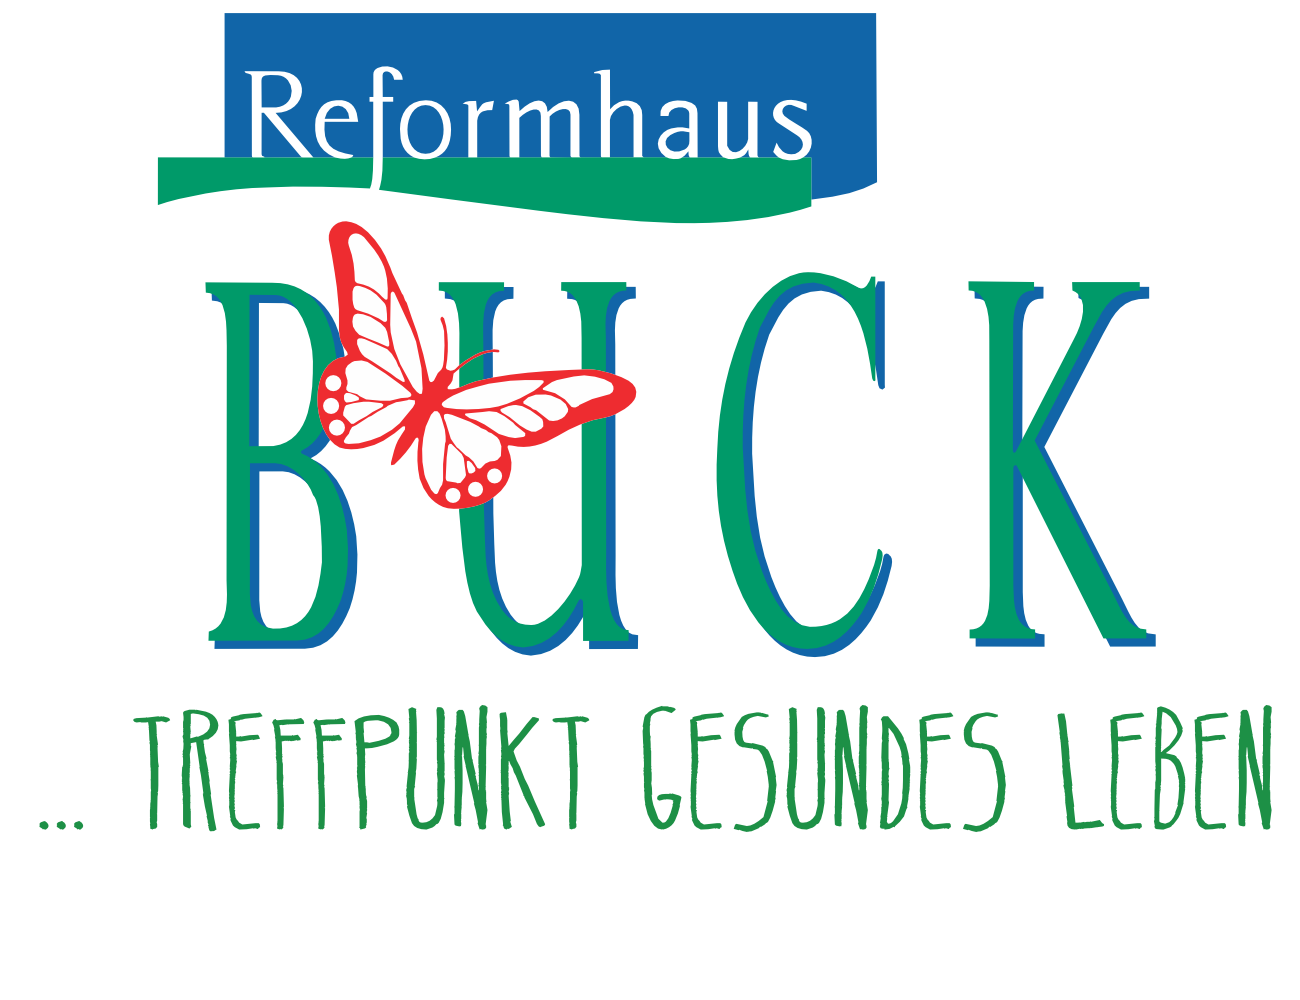 Reformhaus Buck